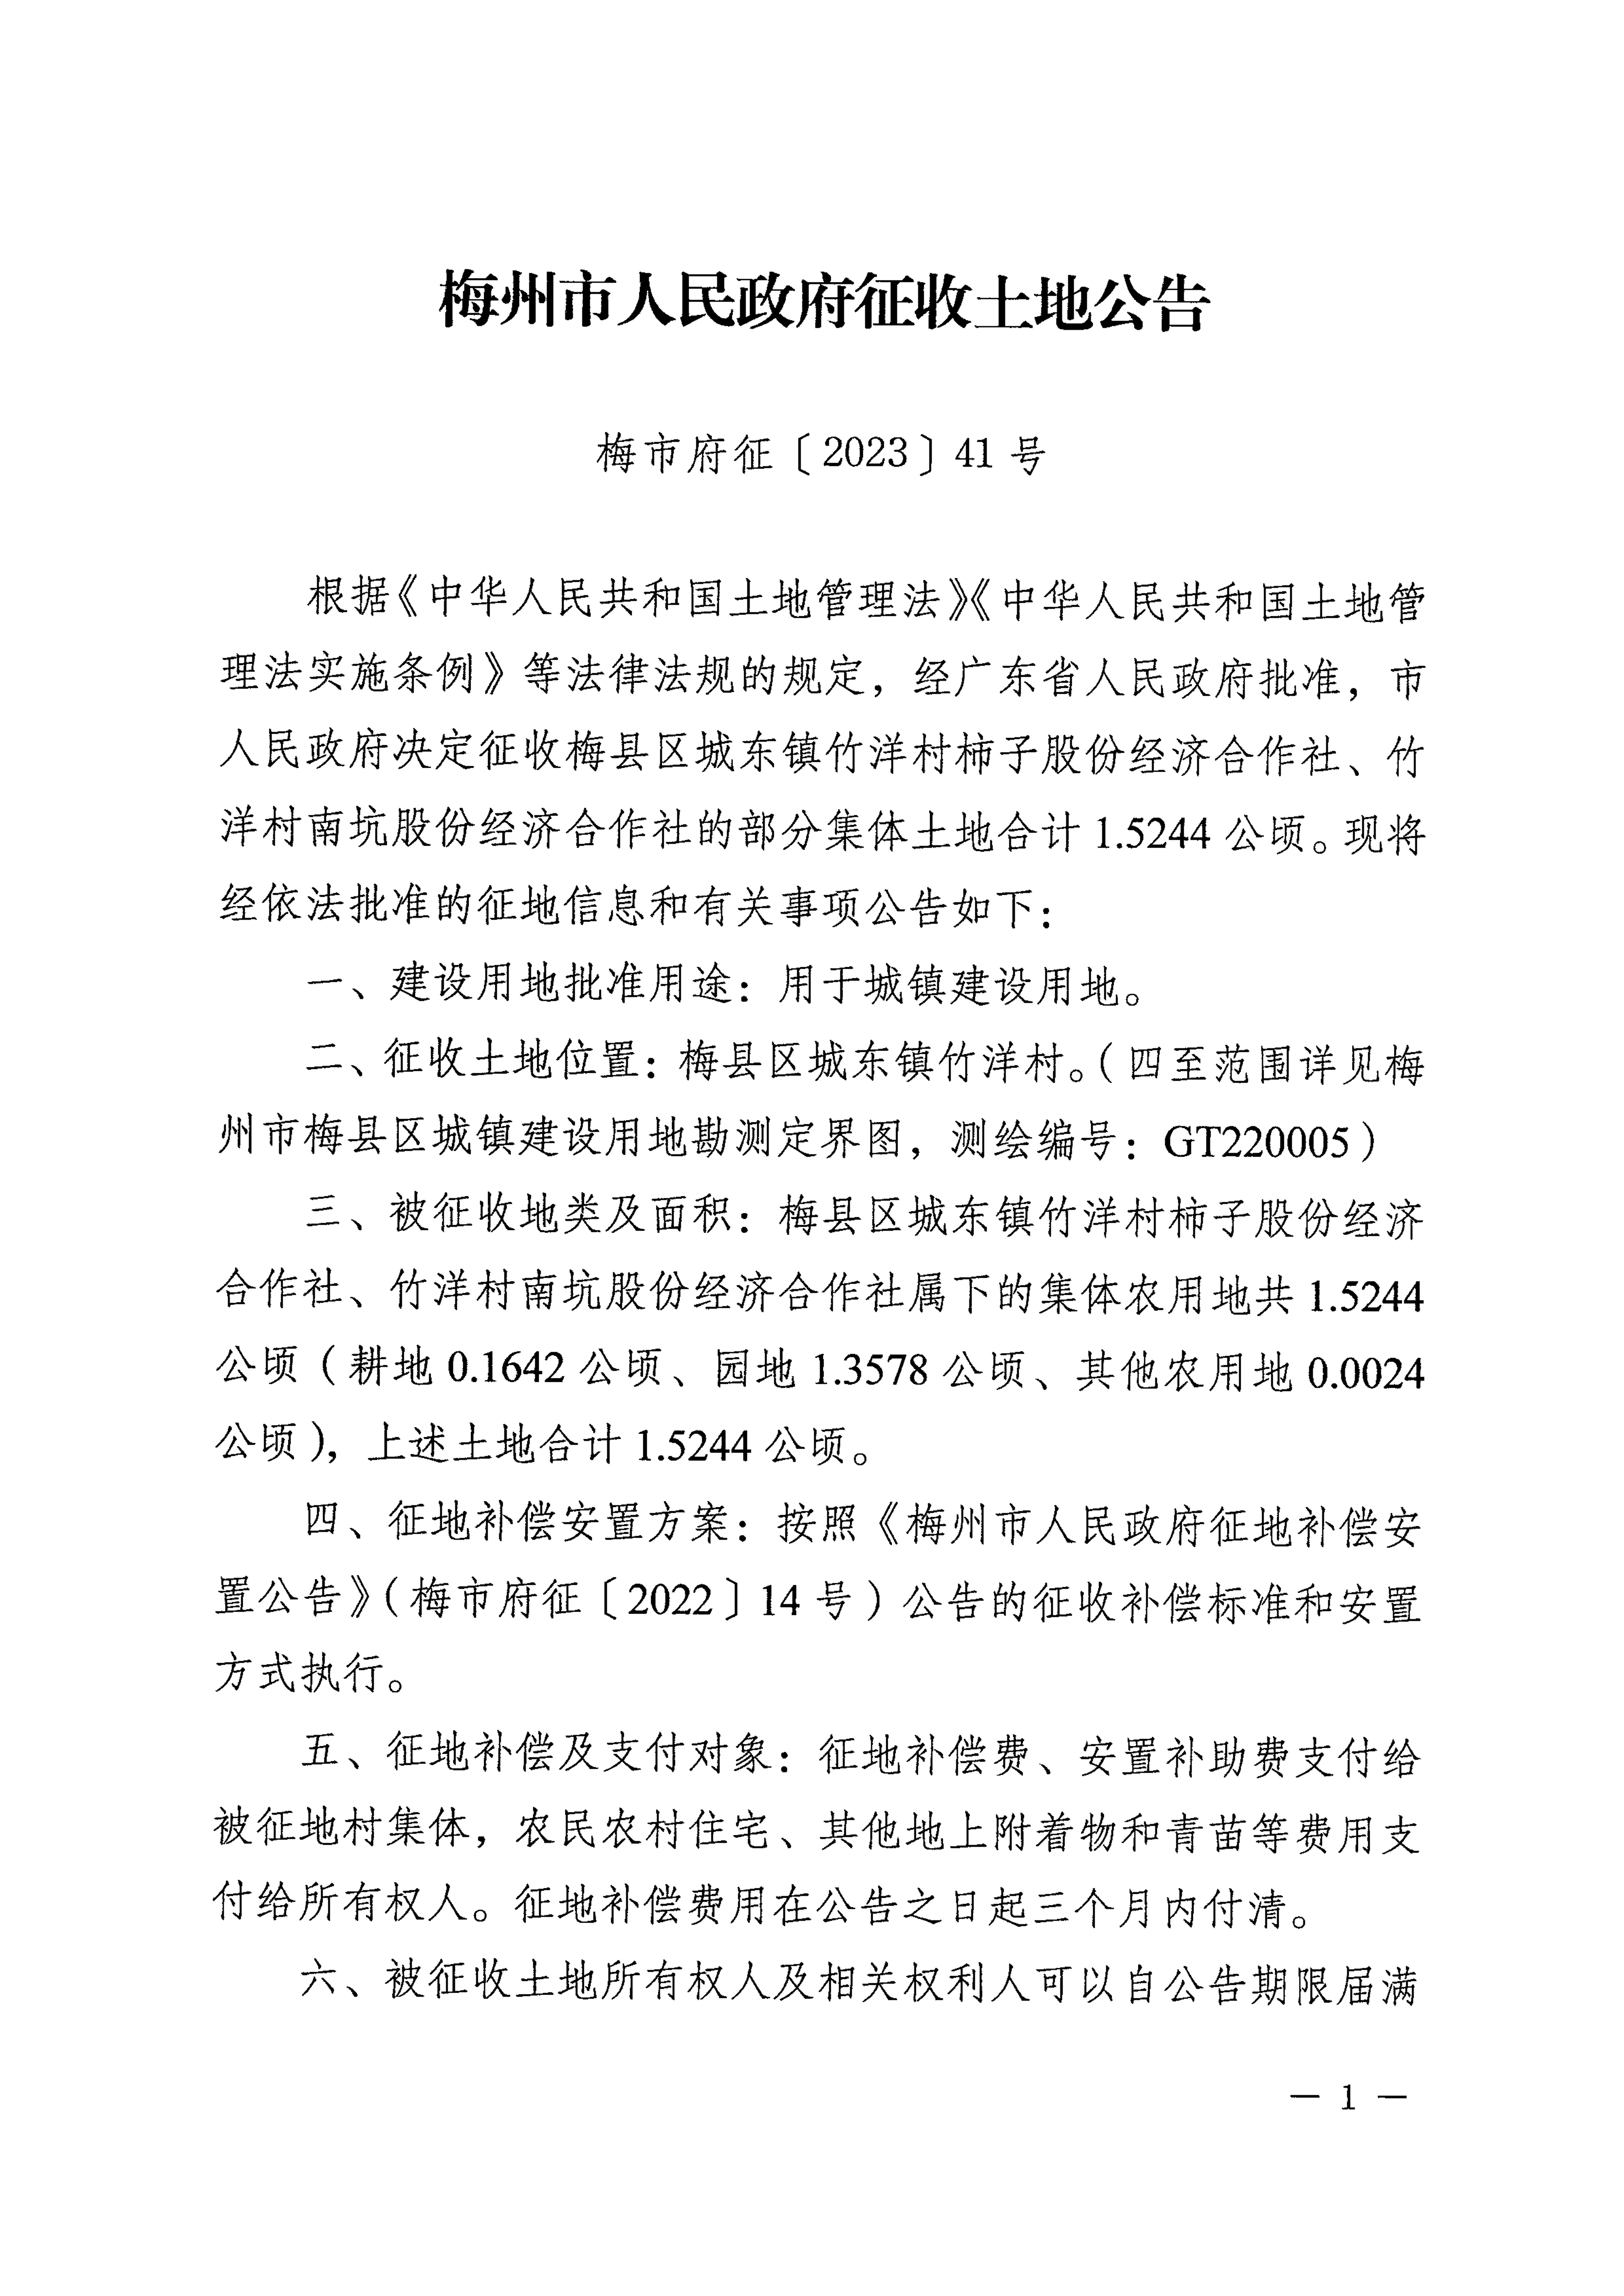 梅州市人民政府征收土地公告（梅市府征〔2023〕41号）张贴稿-1.png